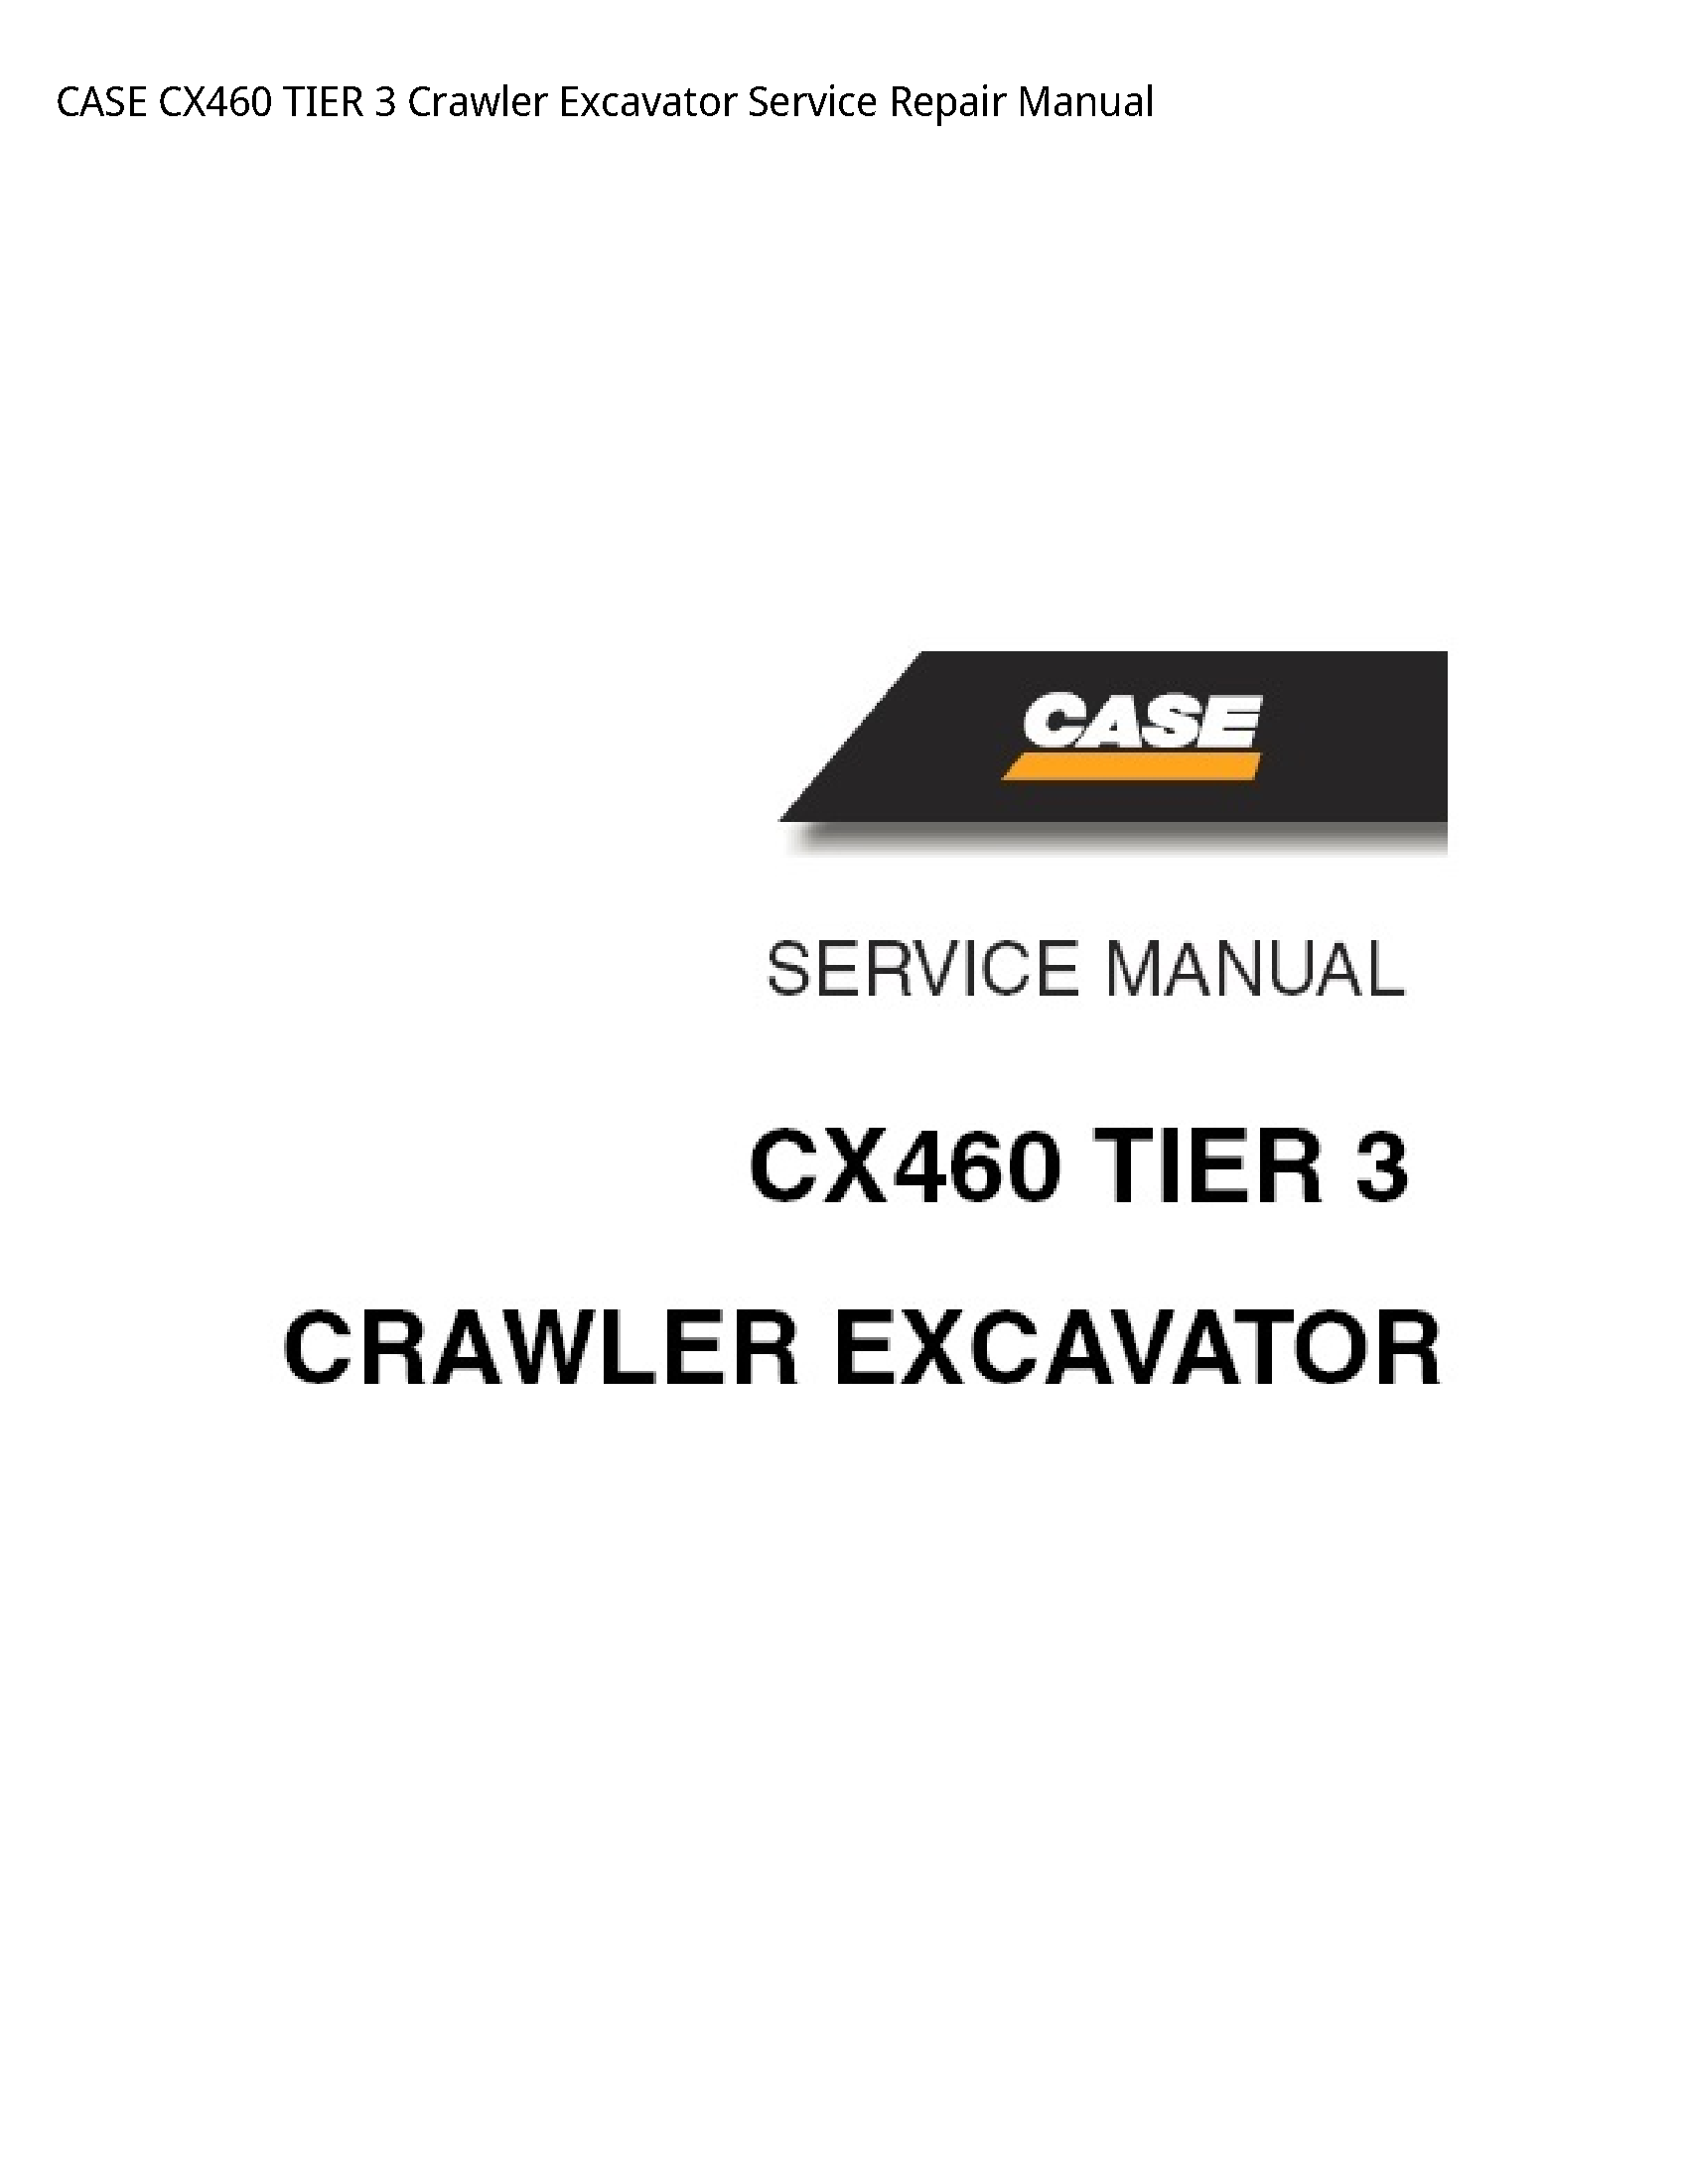 Case/Case IH CX460 TIER Crawler Excavator manual